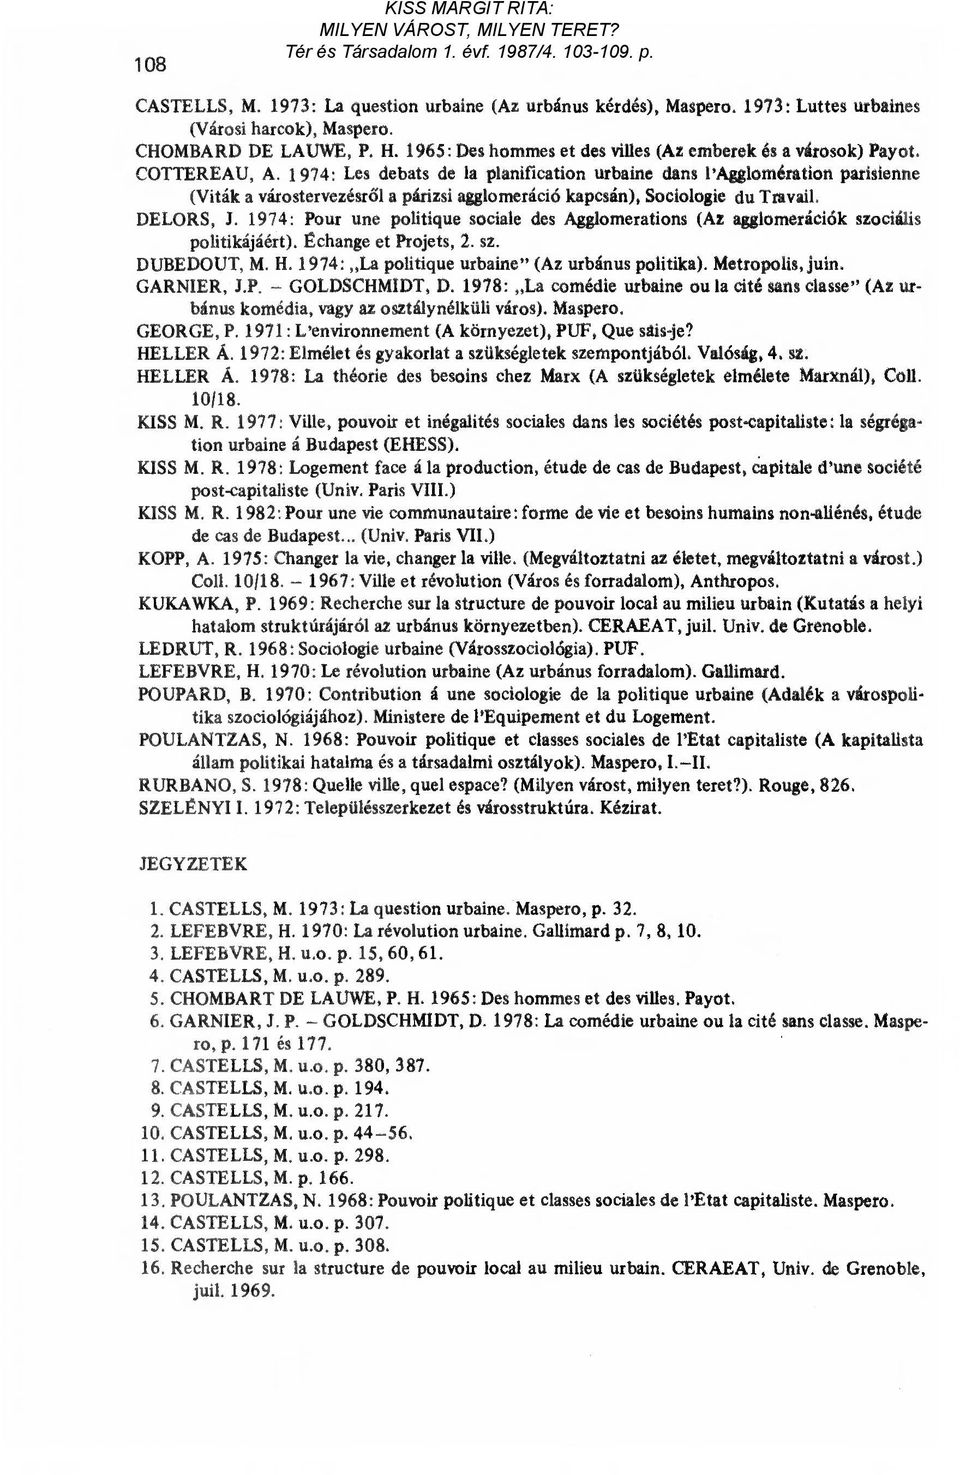 1974: Les debats de la planification urbaine dans l'agglomération parisienne (Viták a várostervezésr ől a párizsi agglomeráció kapcsán), Sociologie du Travail. DELORS, J.